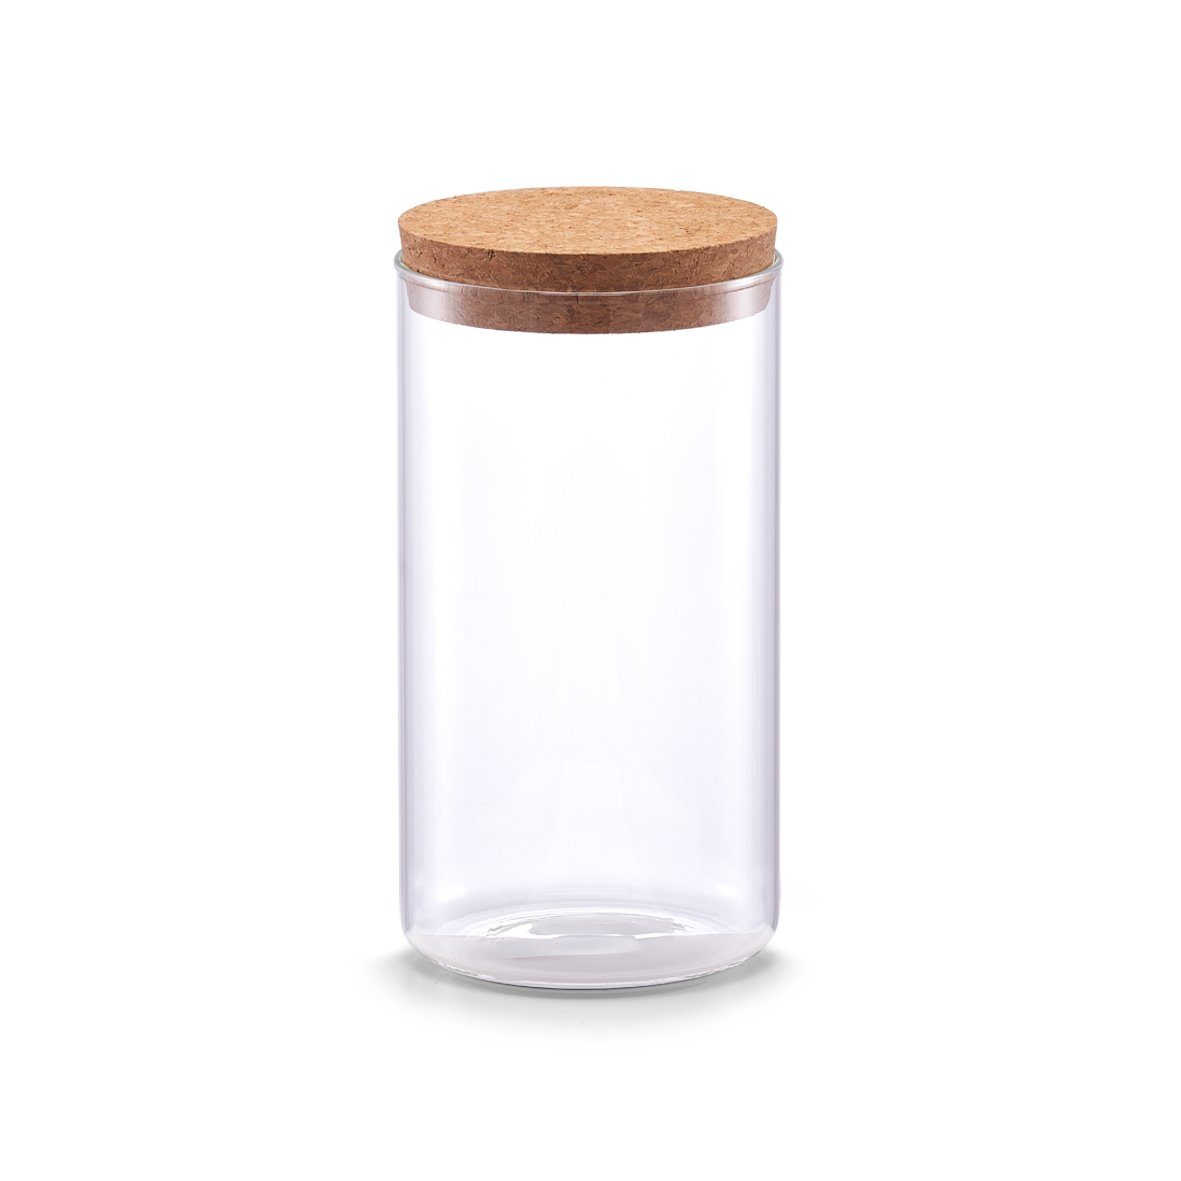 Zeller Present Vorratsglas Vorratsglas m. Korkdeckel, Glas/Kork, 1100 ml, Glas/Kork, transparent, Ø9,5 x 18,5 cm